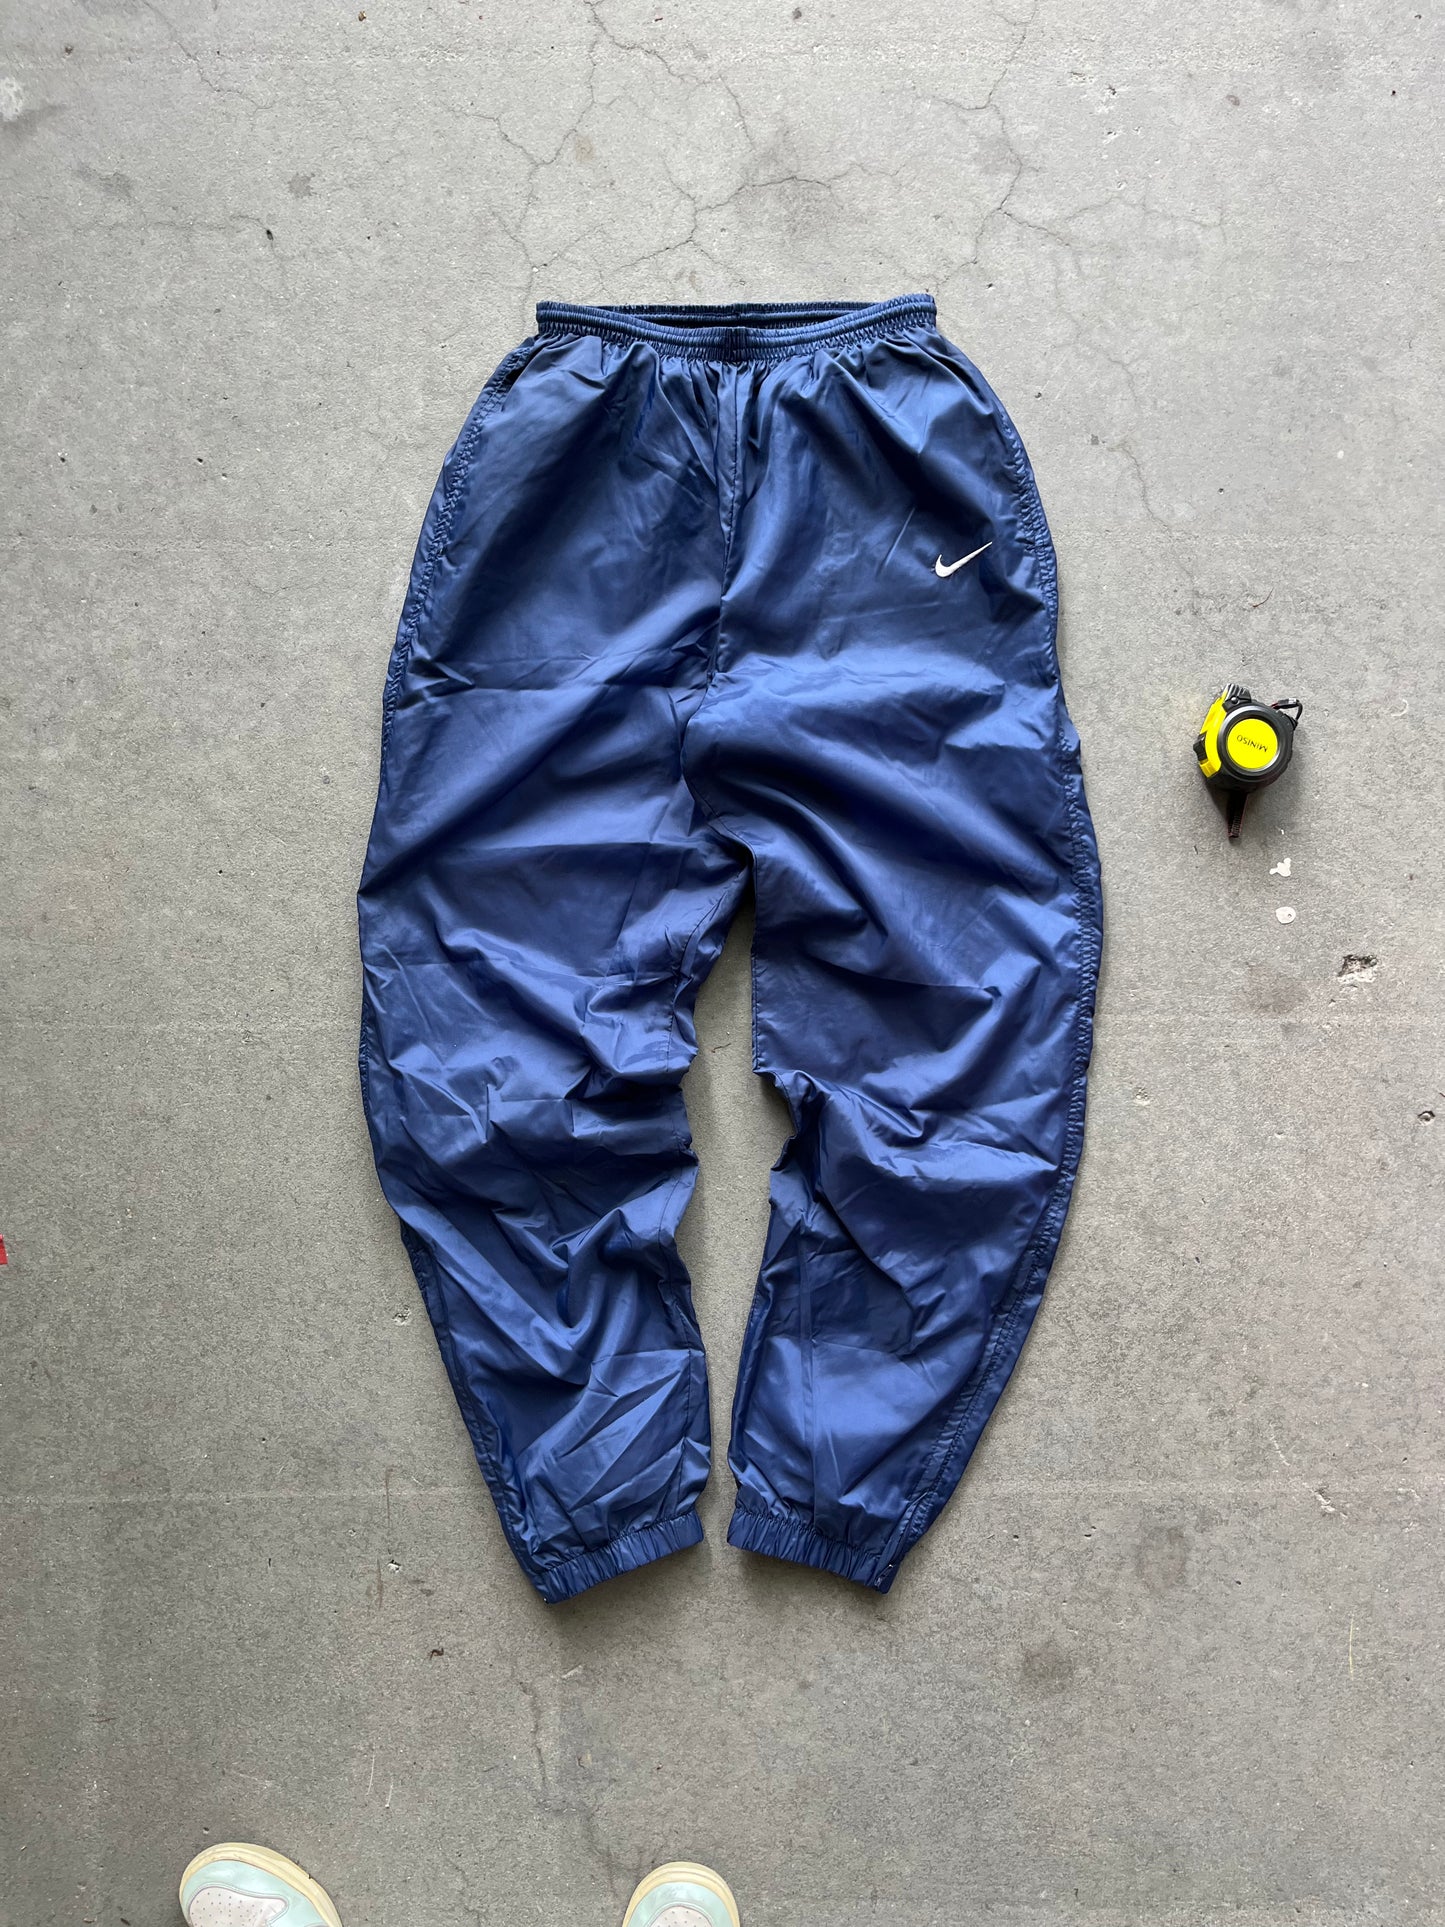 90s Navy Nike Swoosh Windbreaker pants